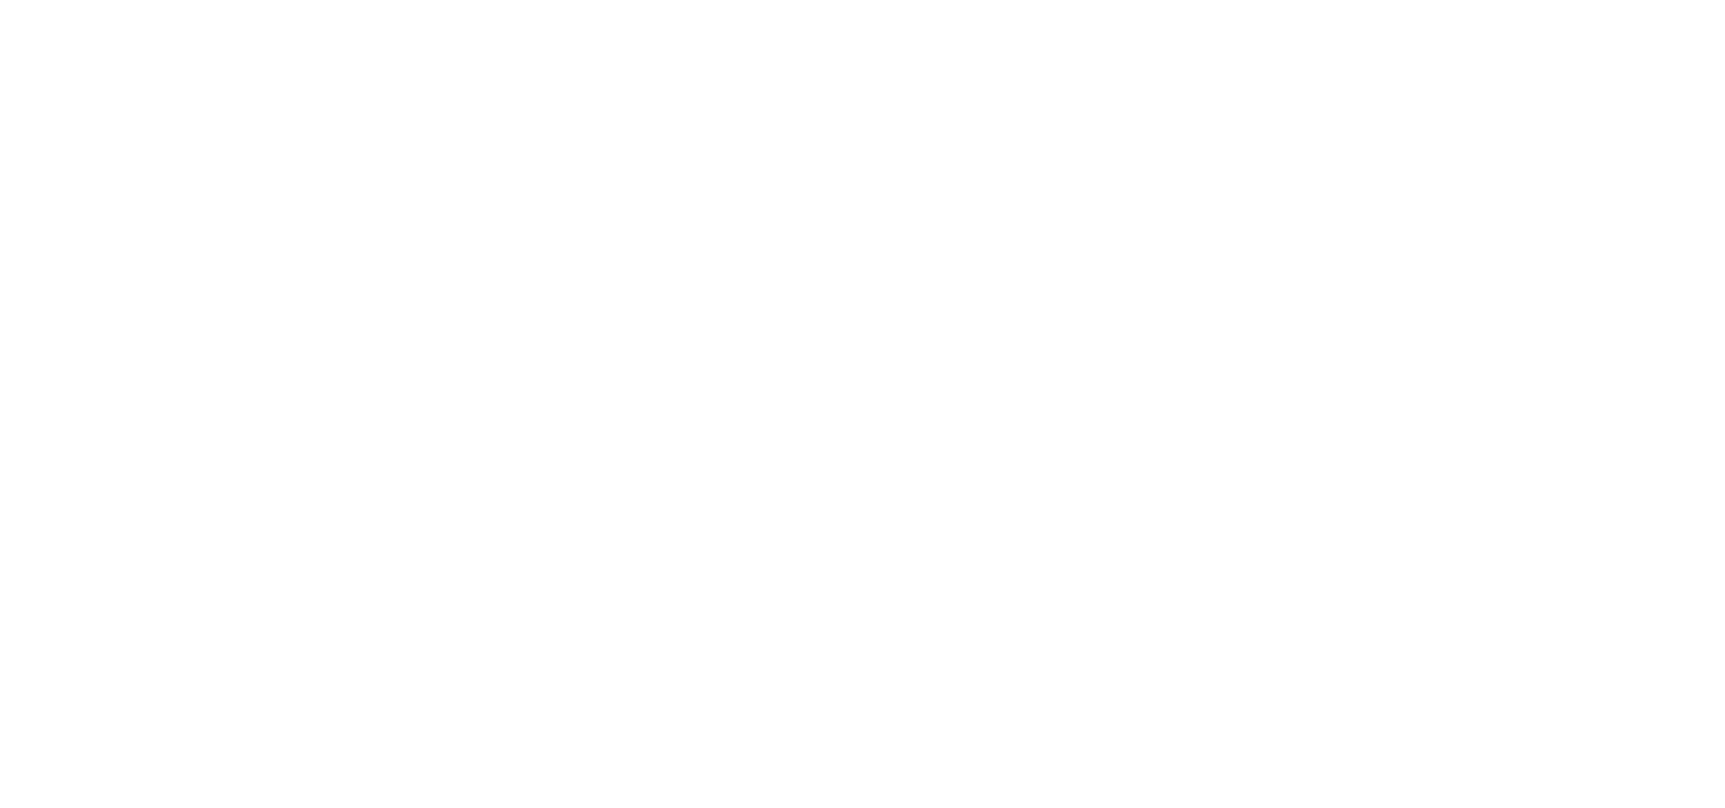 Super Structures General Contractors, Inc